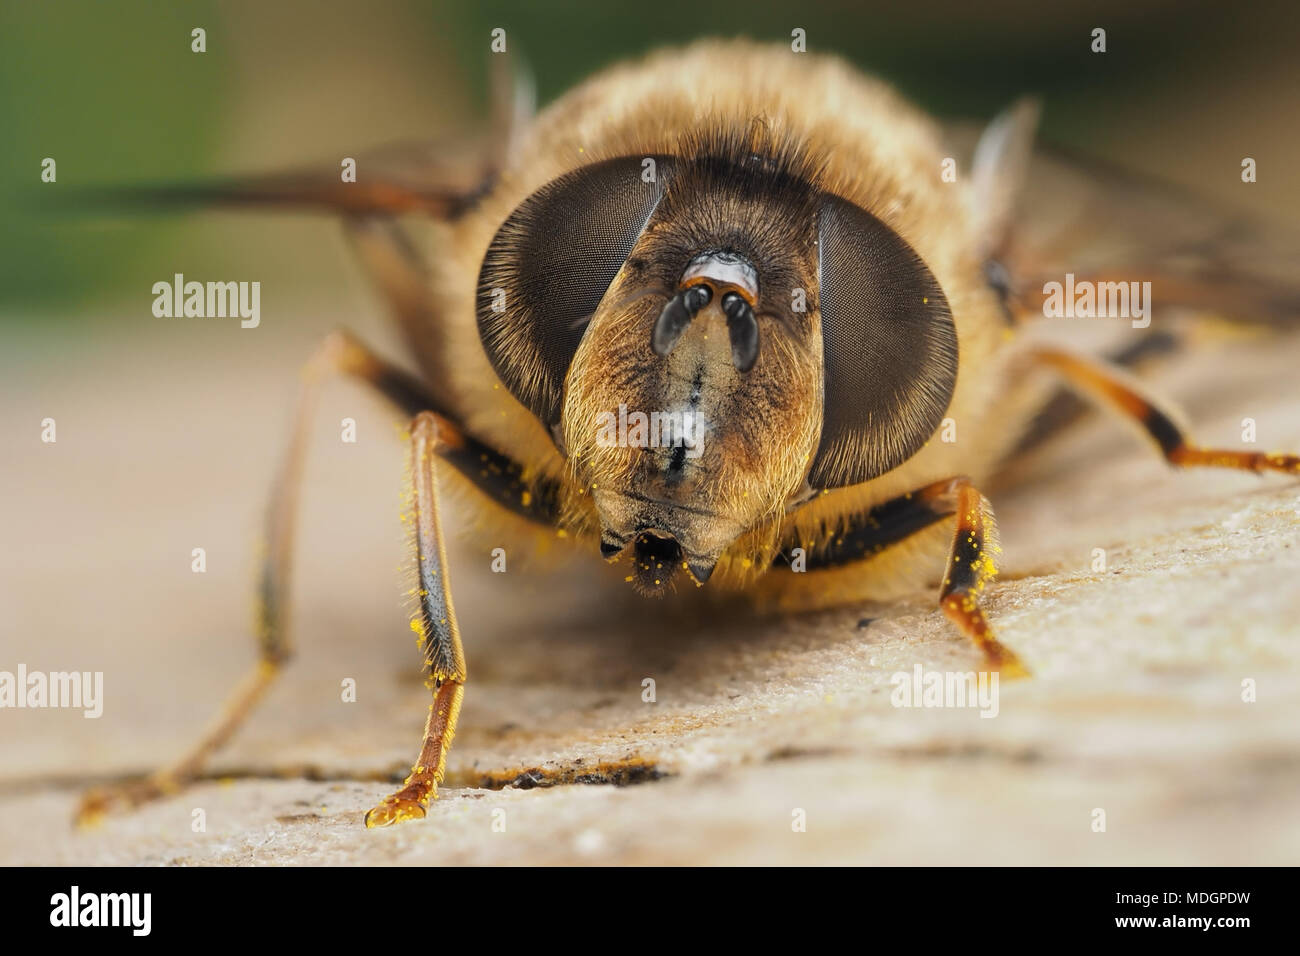 Eristalis pertinax hoverfly weiblich. Nahaufnahme des Gesichts und der facettenaugen. Tipperary, Irland Stockfoto